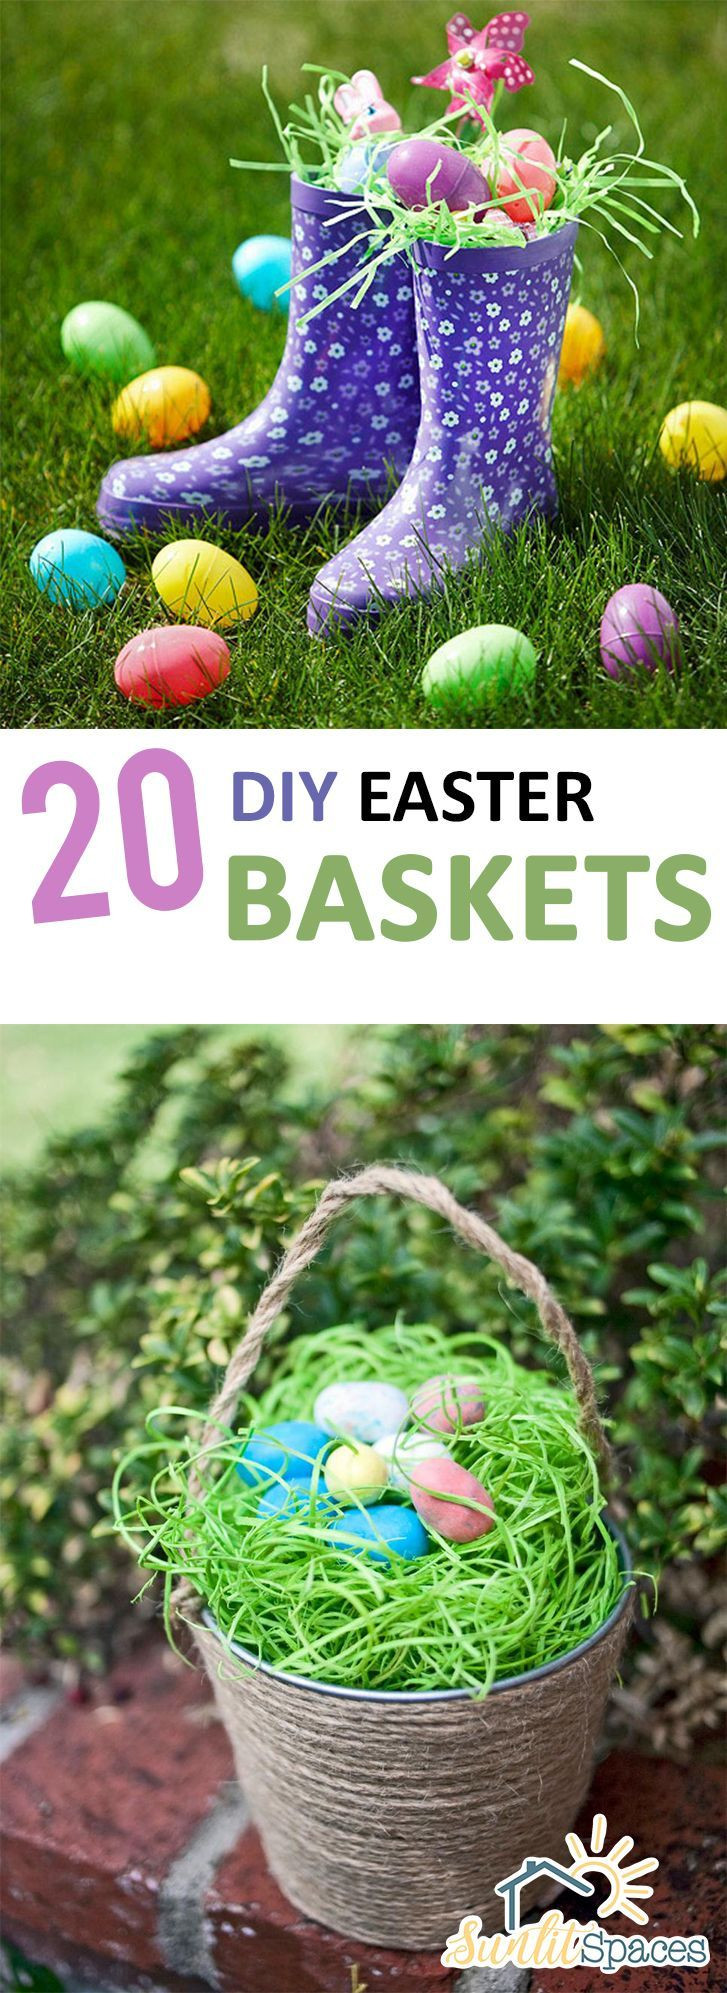 DIY Easter Baskets For Toddlers
 20 DIY Easter Baskets